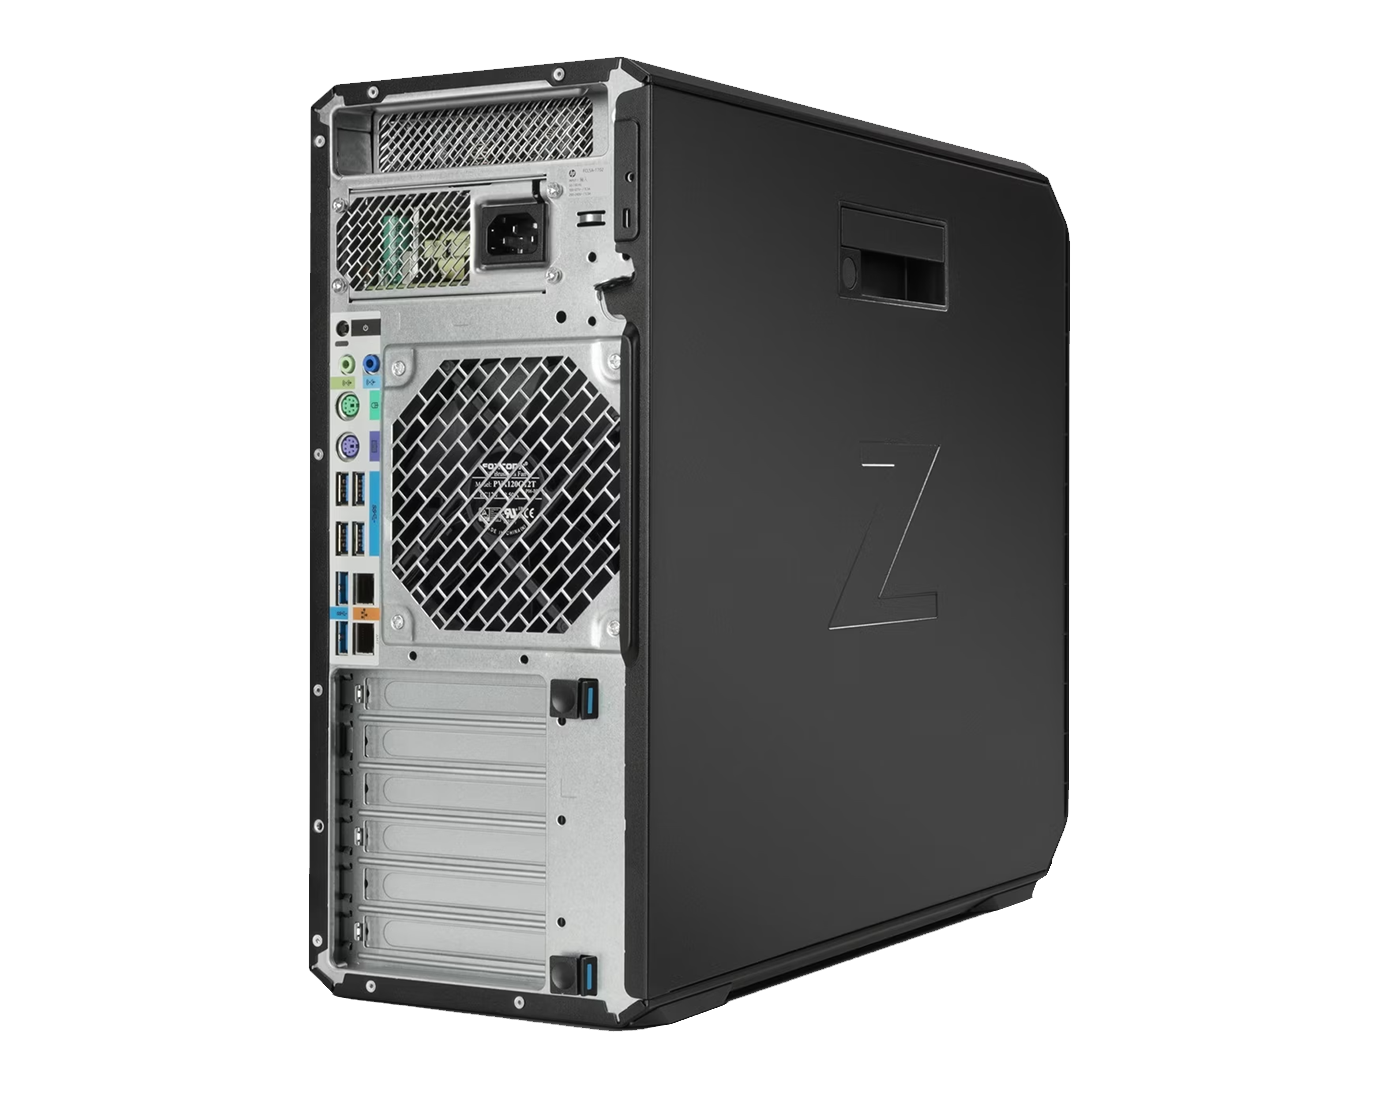 Pack Z4 G4 + Z24i G2 / Xeon W-2102 2,9ghz / 16Gb Ram / 256Gb ssd + 500Gb / Quadro P2000 5Gb / 24" panel Ips y ergonómica/ Win 10 Pro ¡Liquidación!